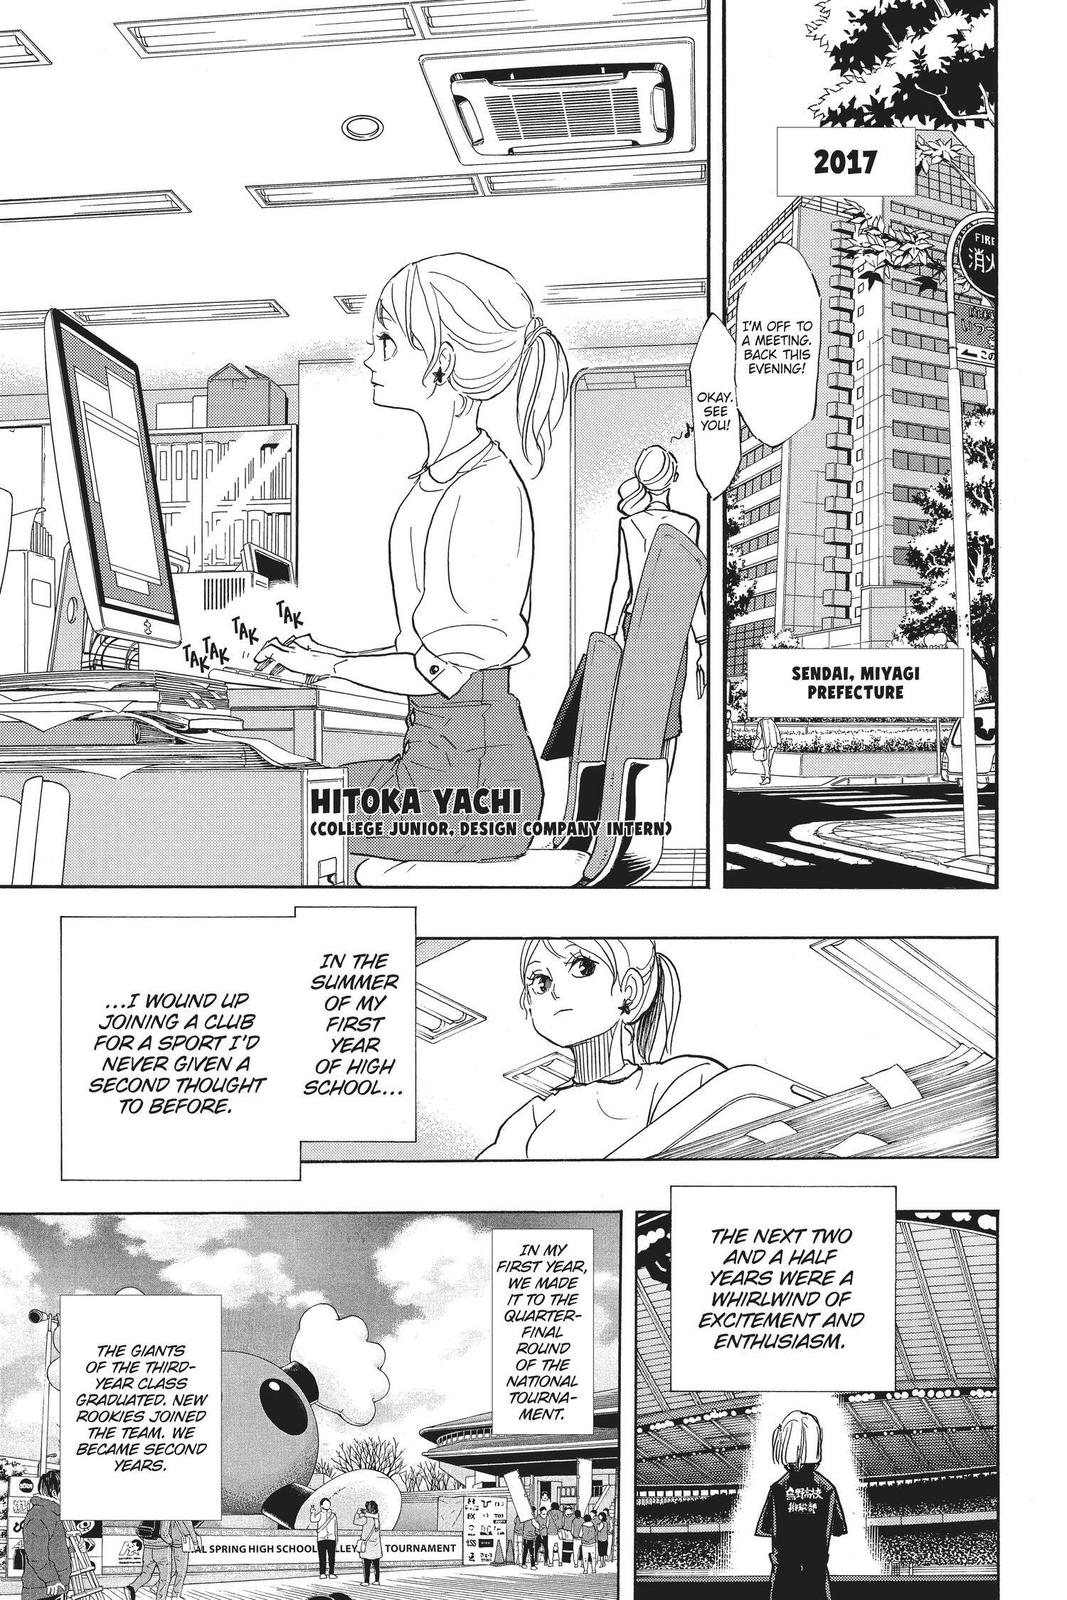 Haikyuu!!, Chapter 378 - Haikyuu!! Manga Online